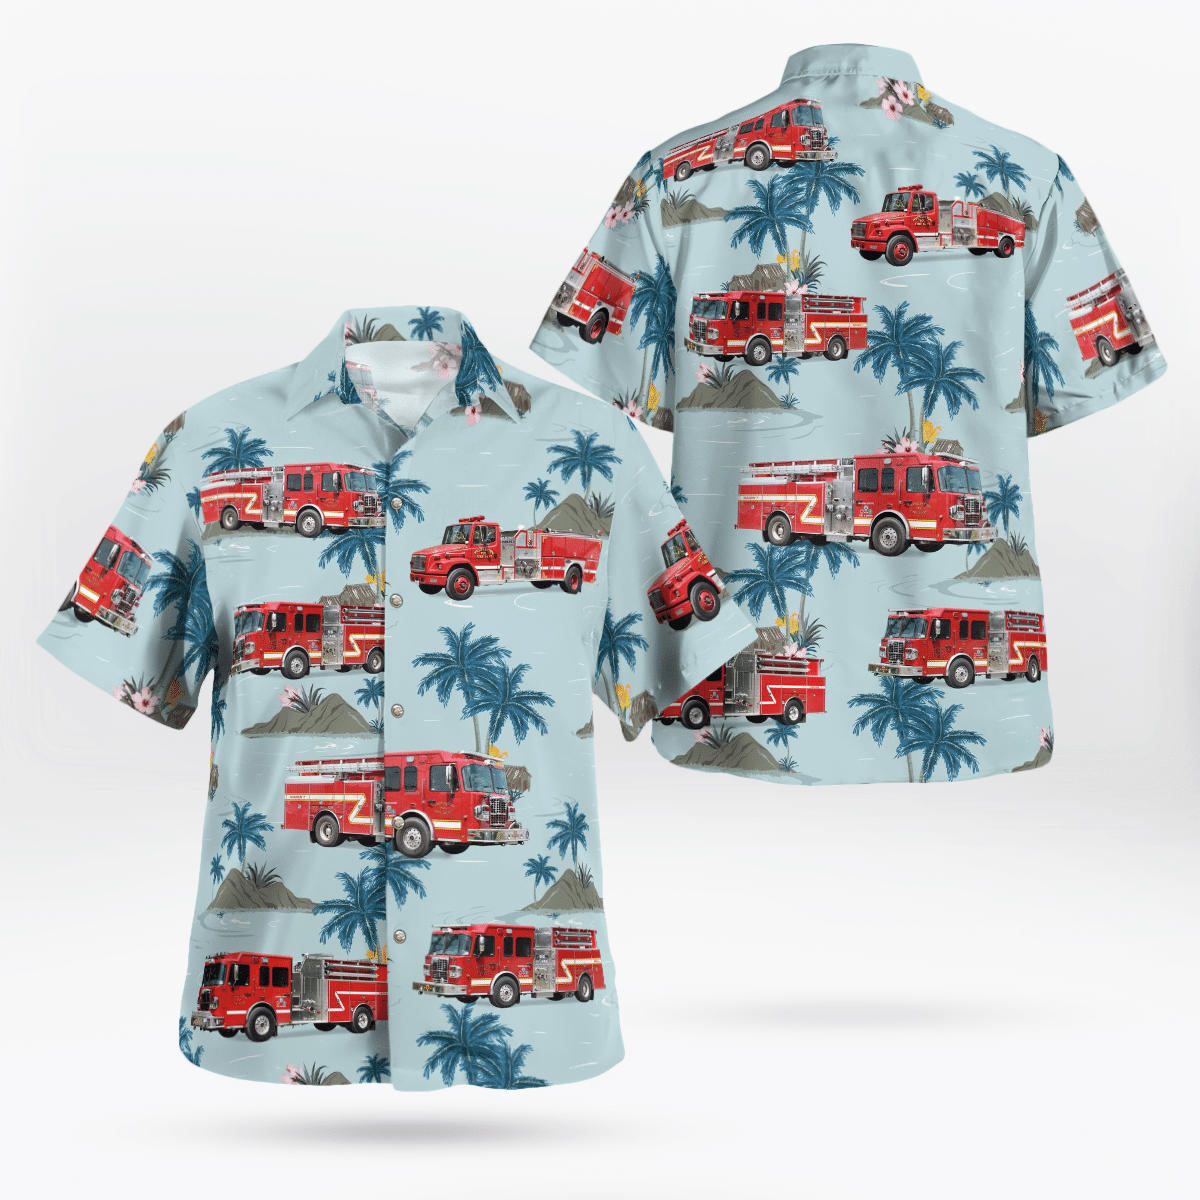 HOT Huddleston Fire Department Hawaiian Shirt